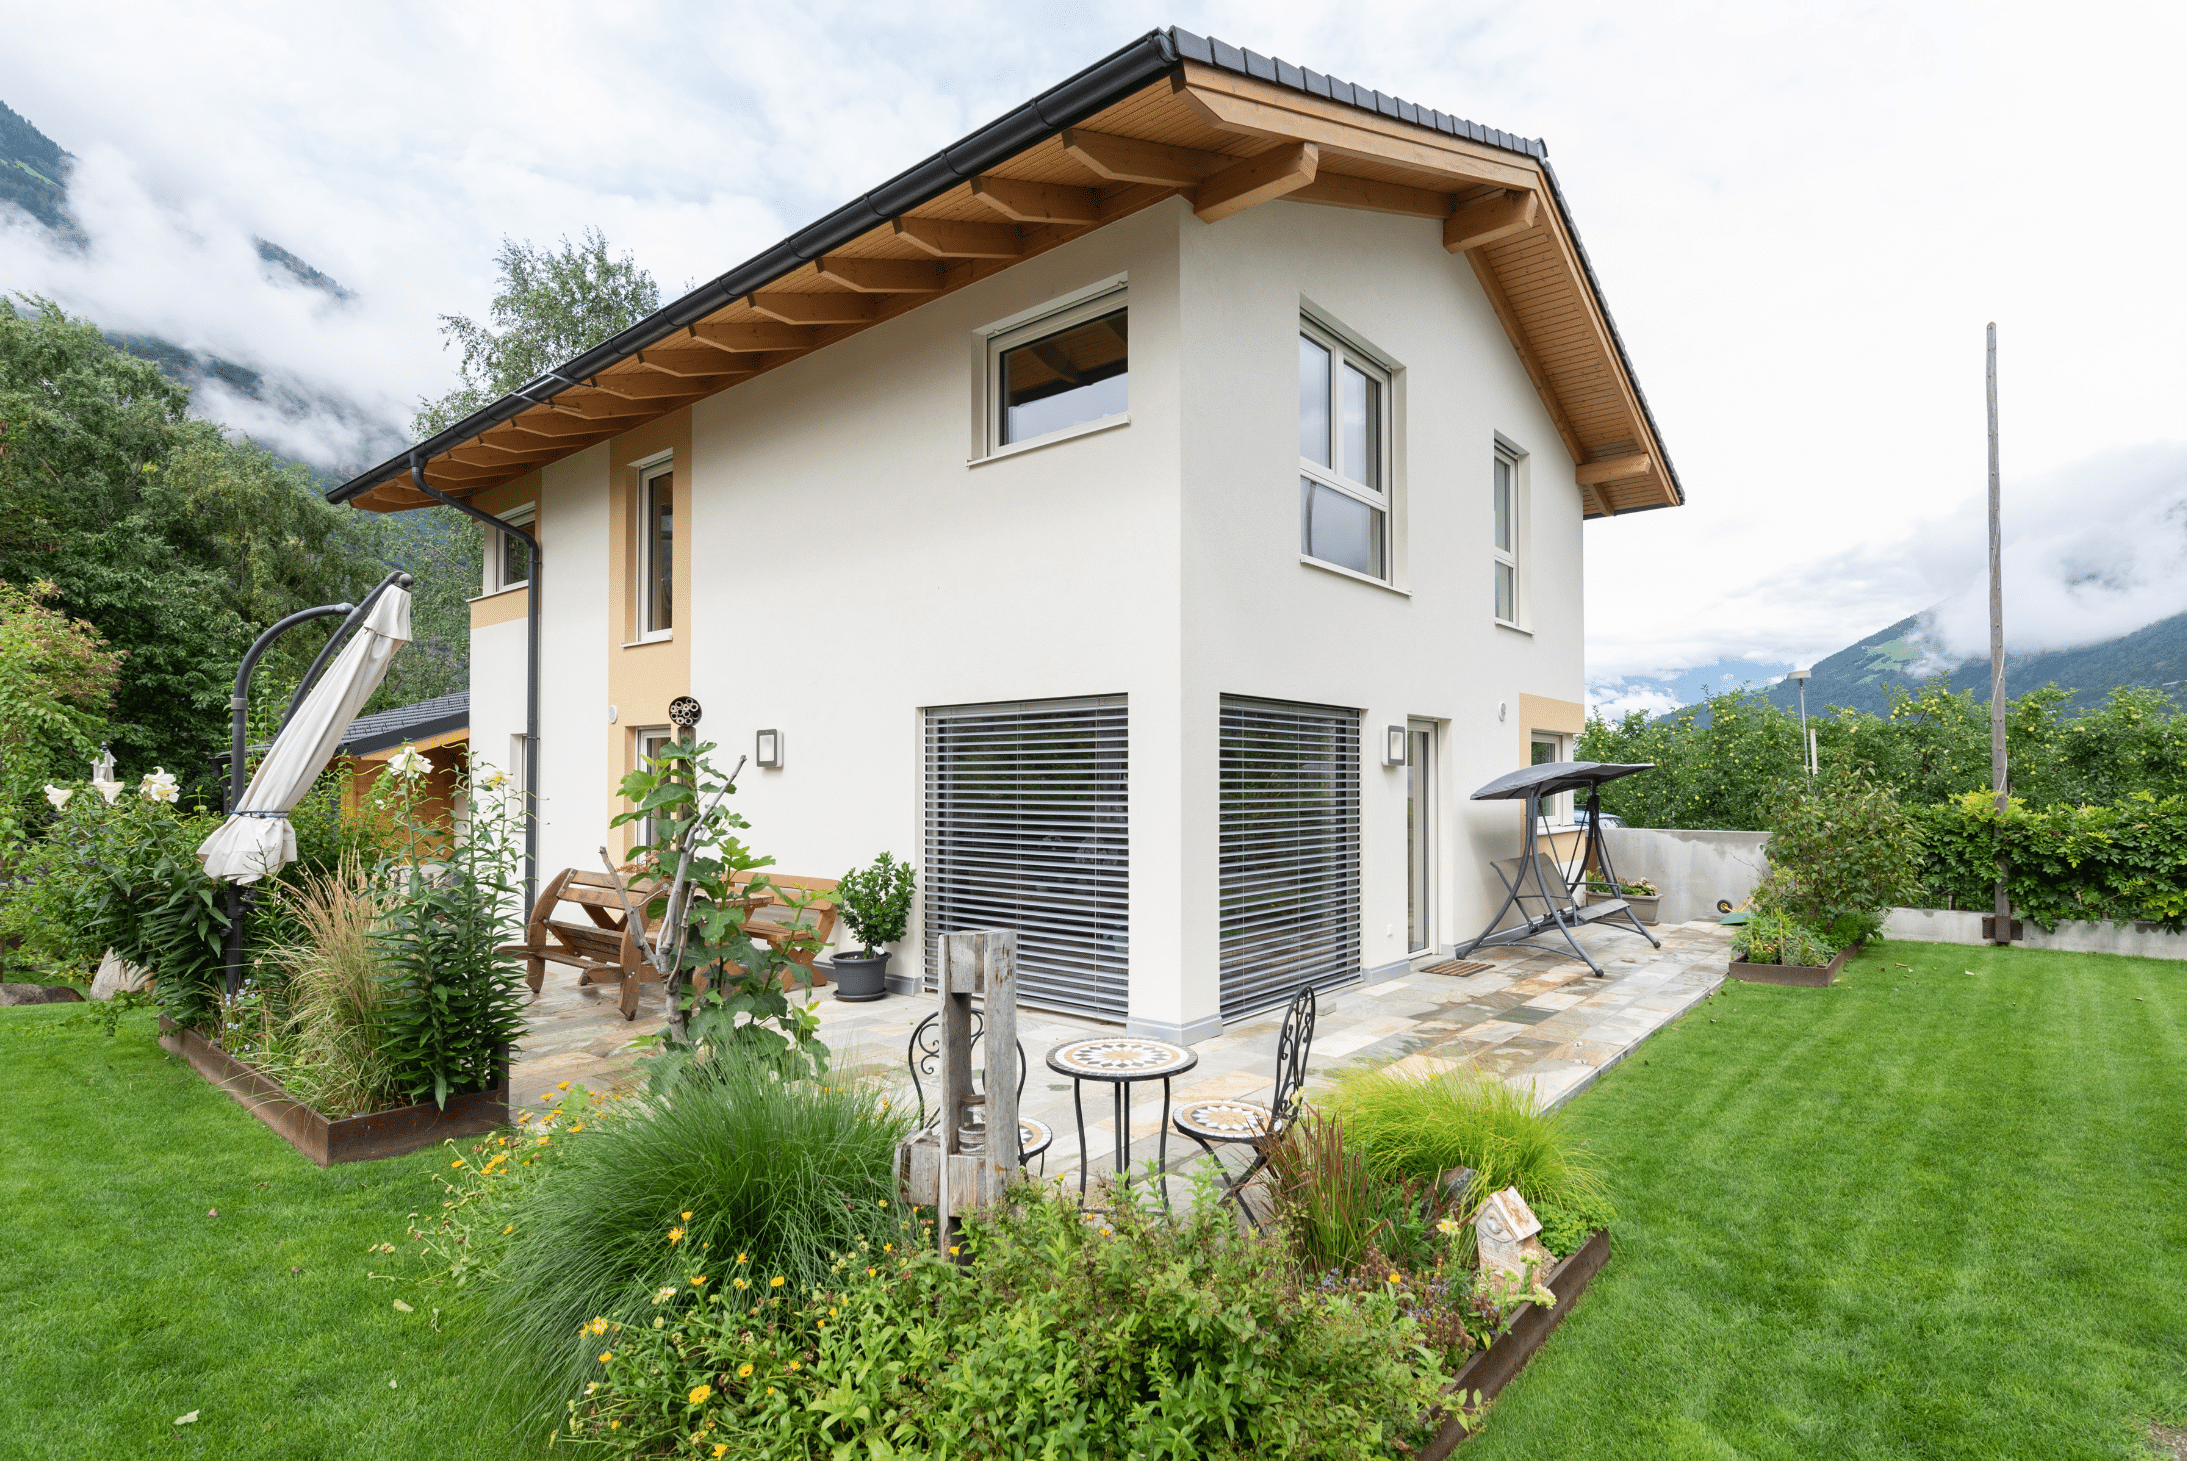 Hartl Haus zeigt ein weißes Einfamilienhaus mit Satteldach, einer Terrasse mit verschiedenen Gartenmöbeln und einem bepflanzten Garten.